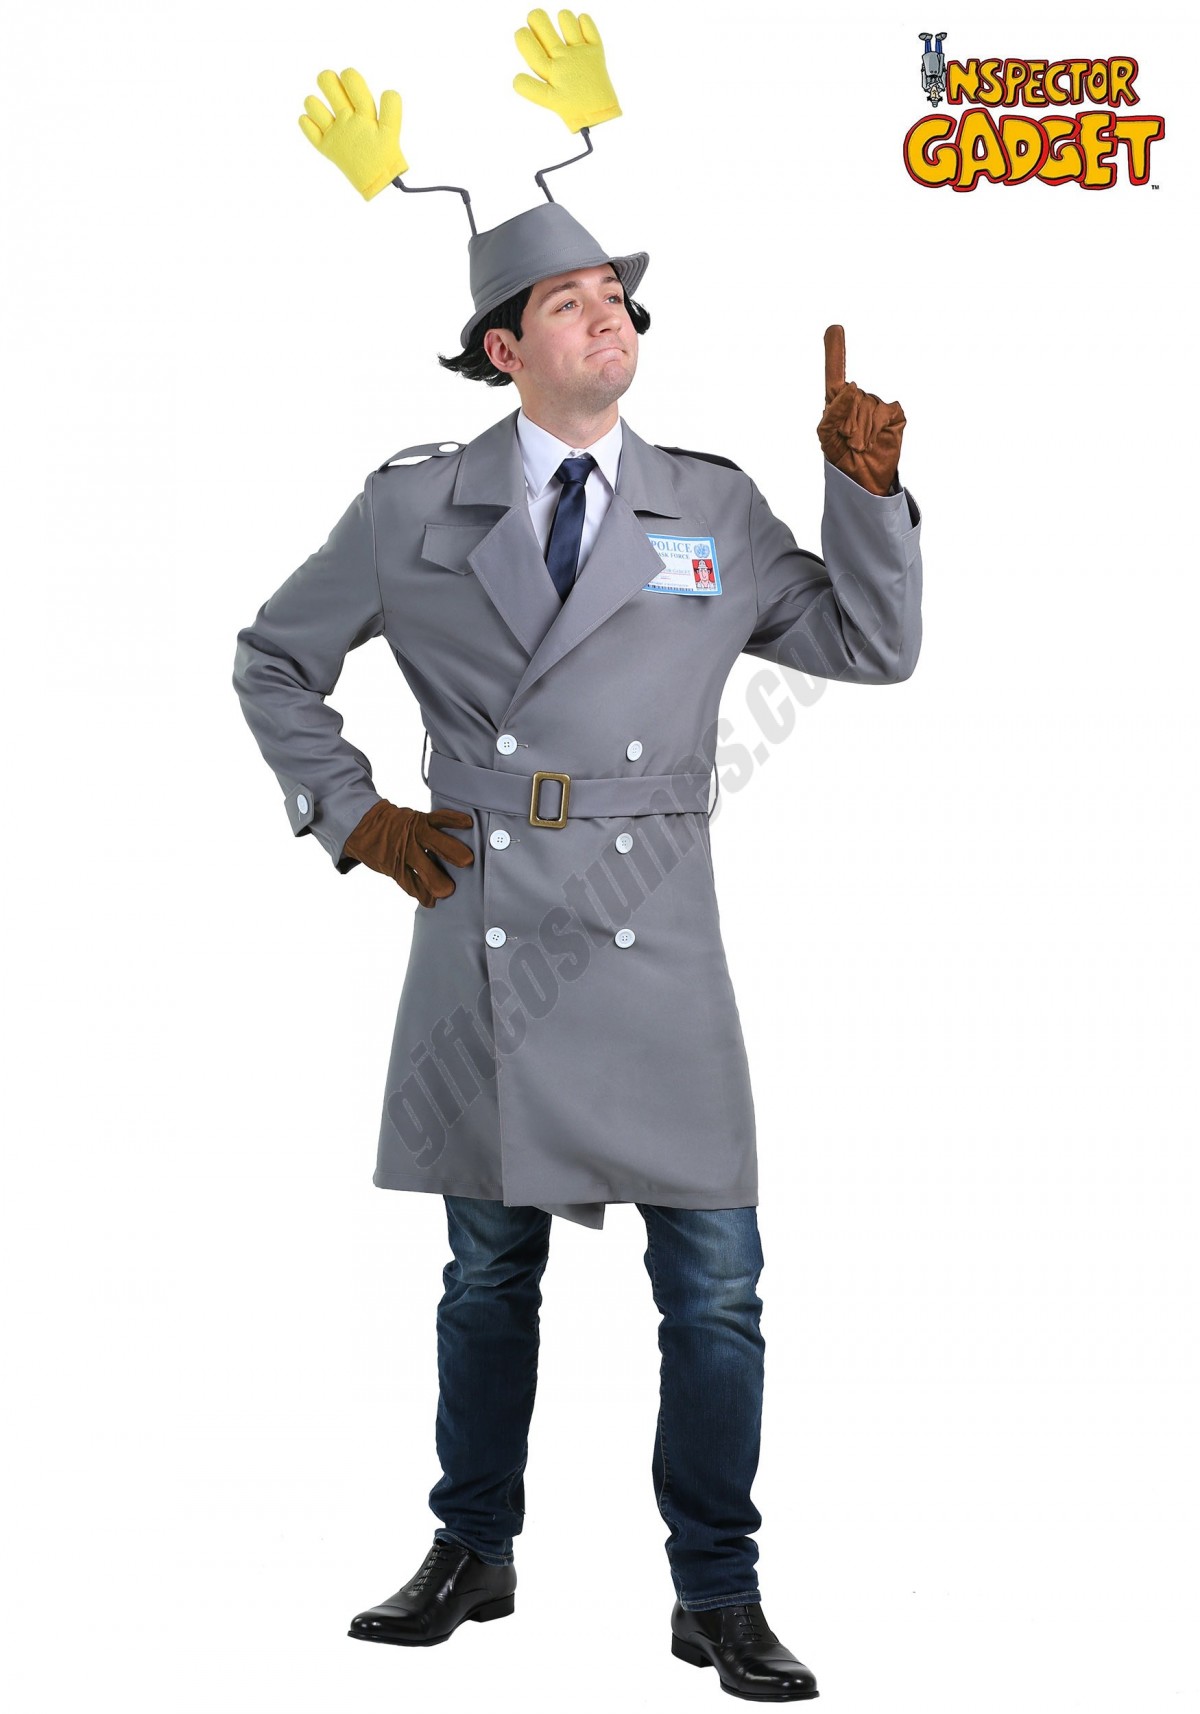  Inspector Gadget Plus Size Men's Costume Promotions - -0